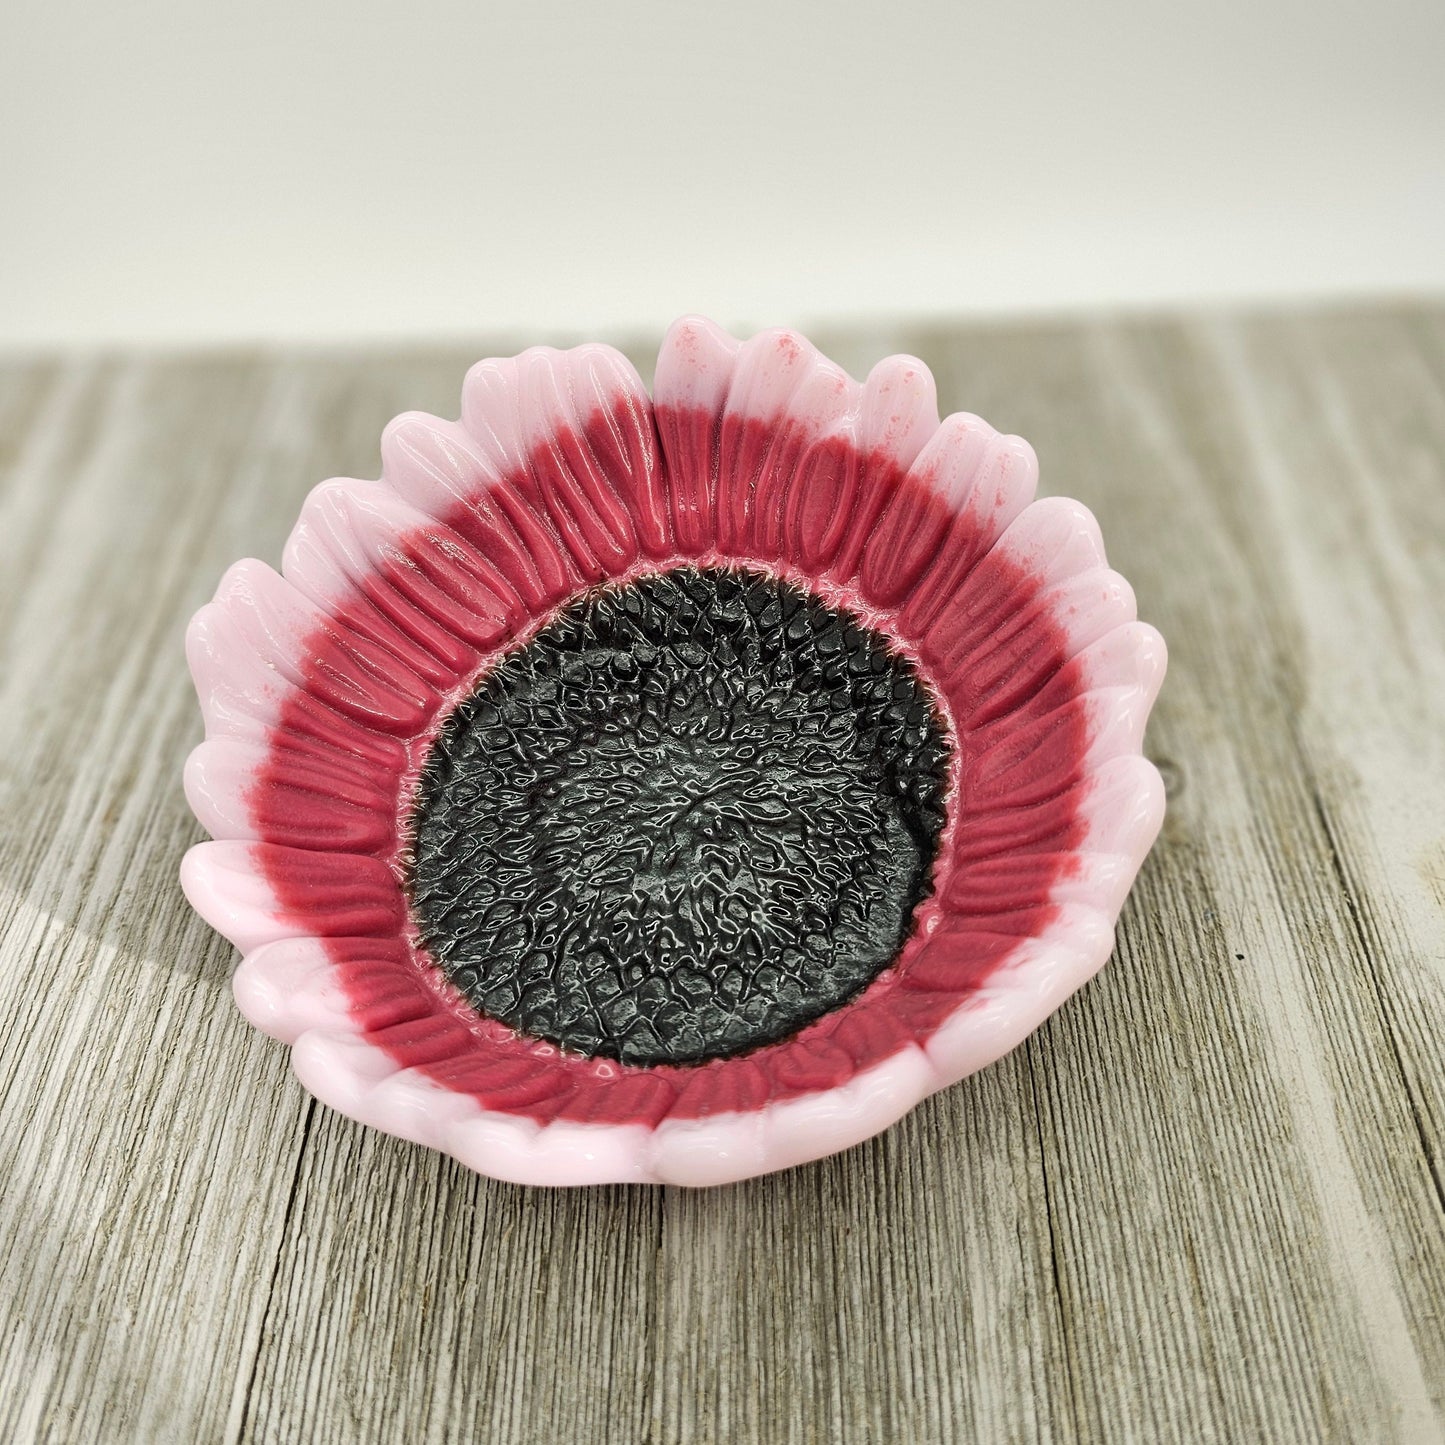 Glass Sunflower Bowl, Pink Sunflower